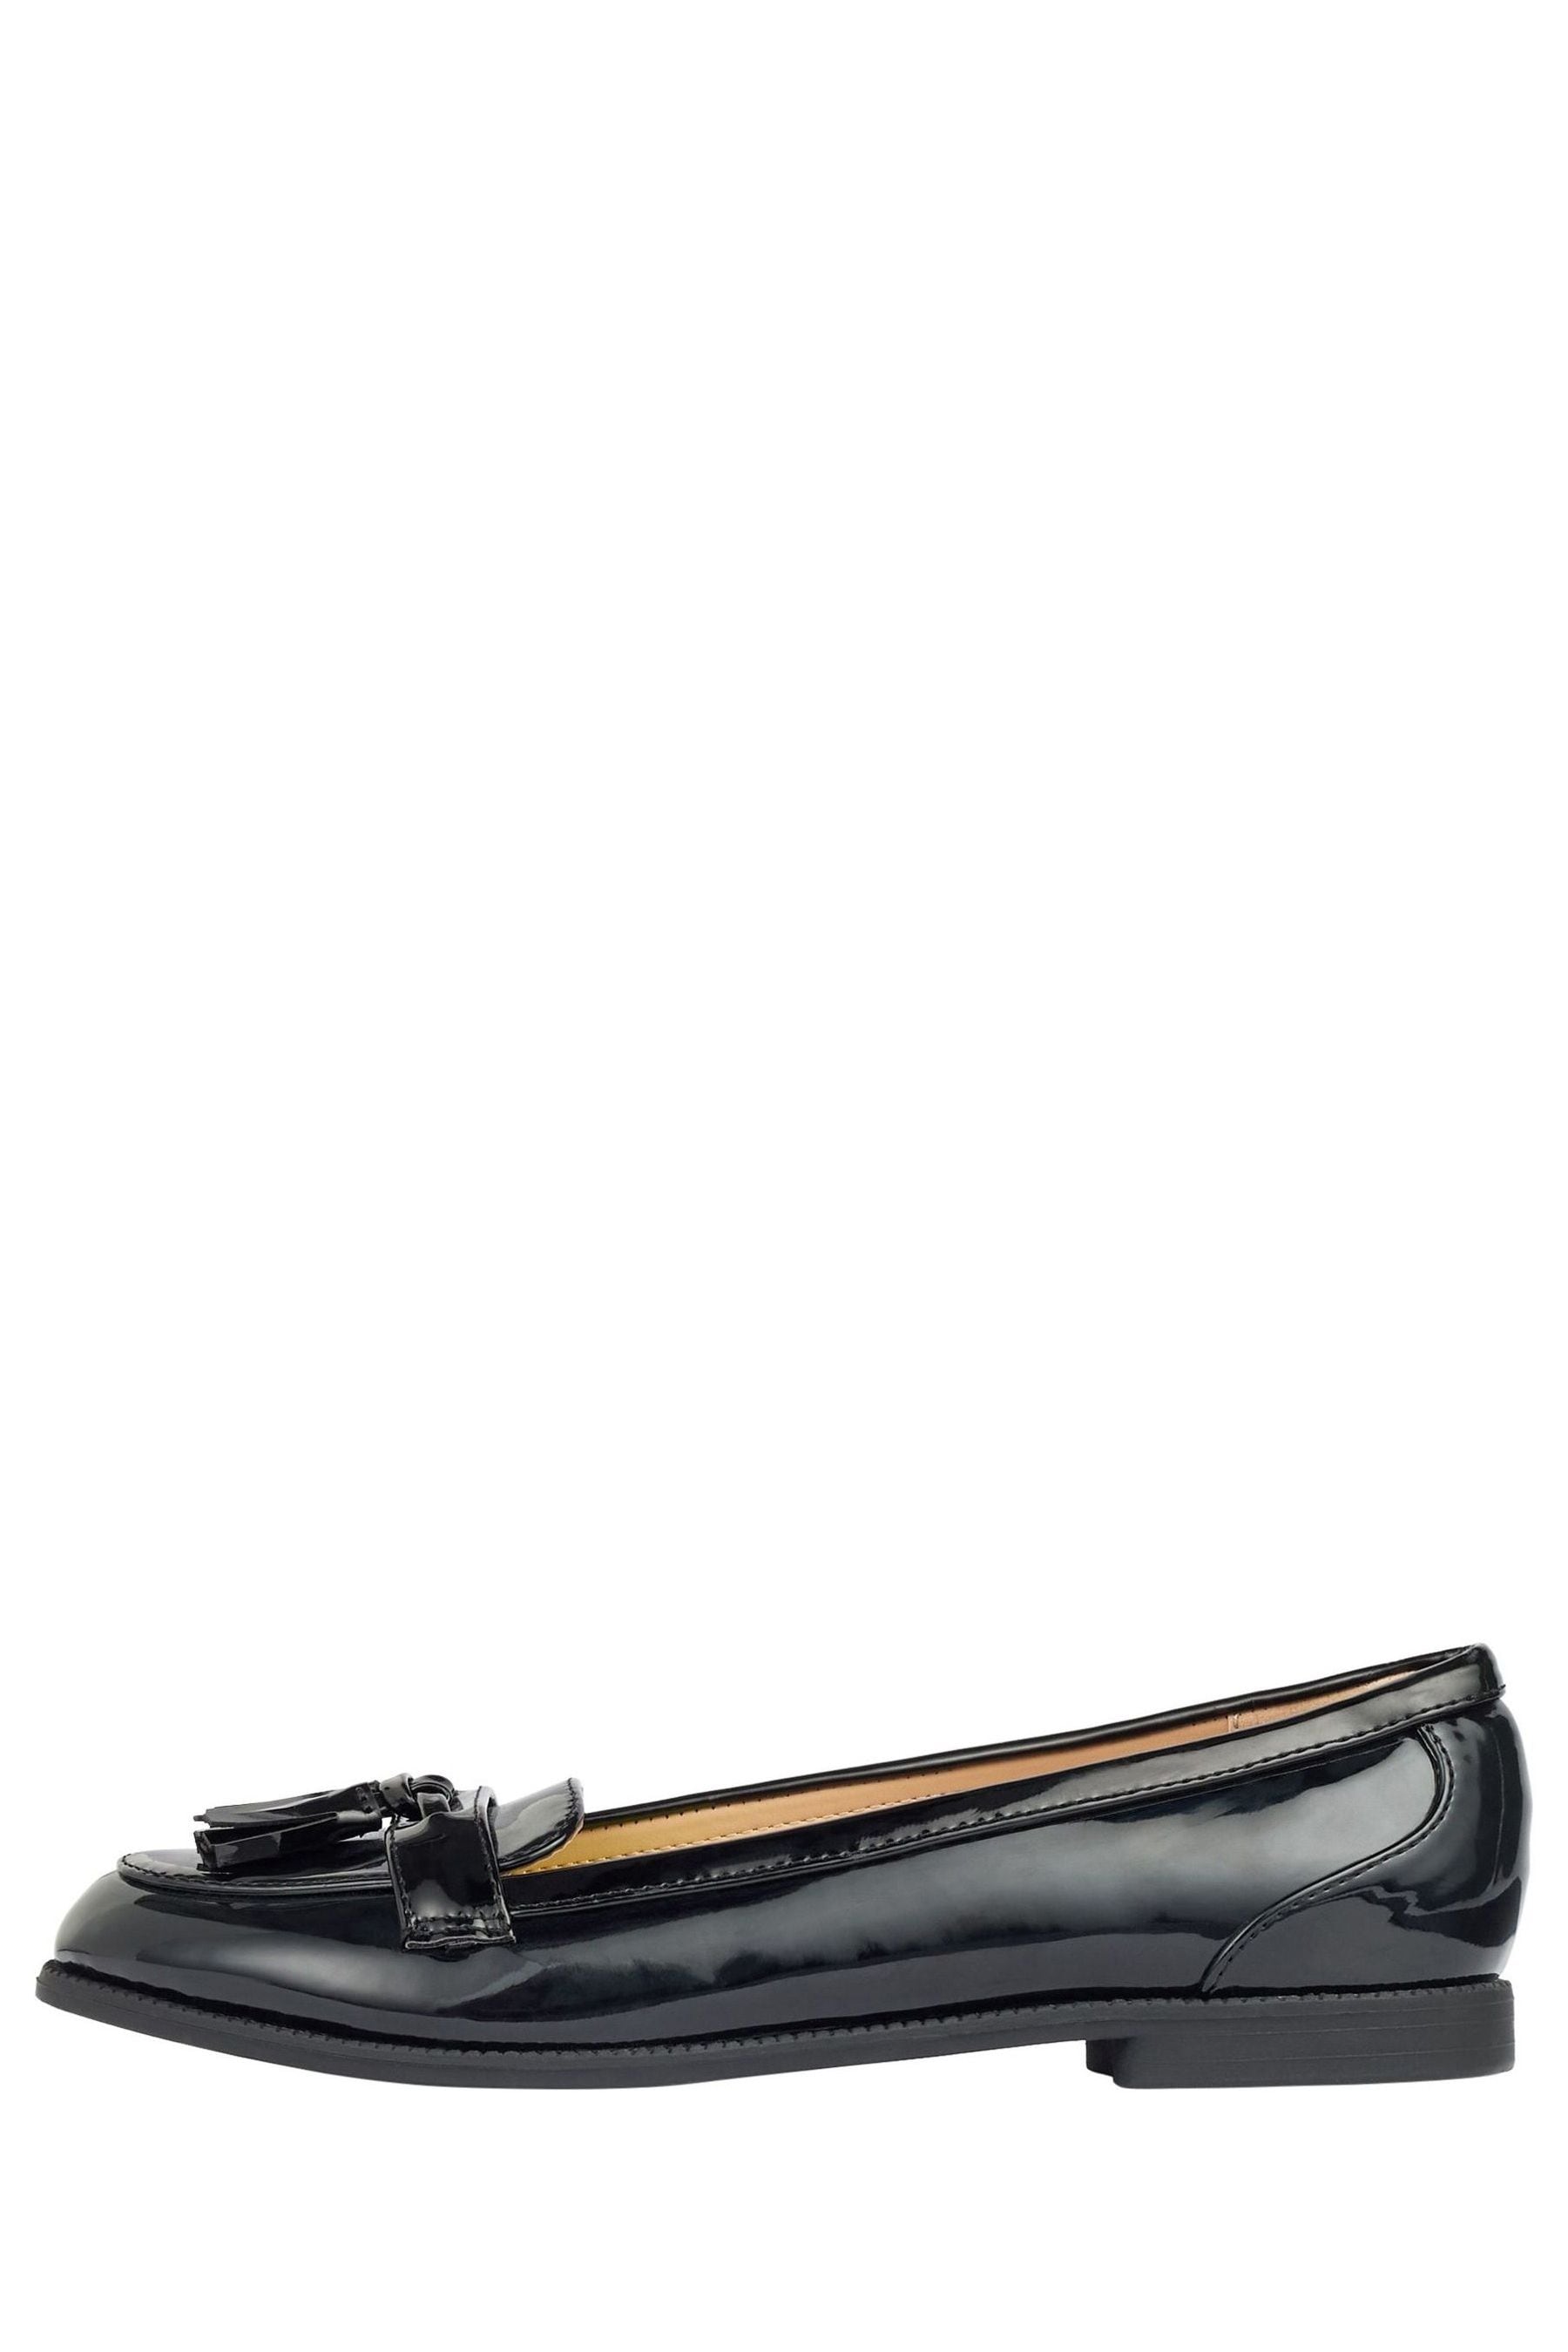 Buy Lipsy Black Regular Fit Tassel Loafer from the Next UK online shop